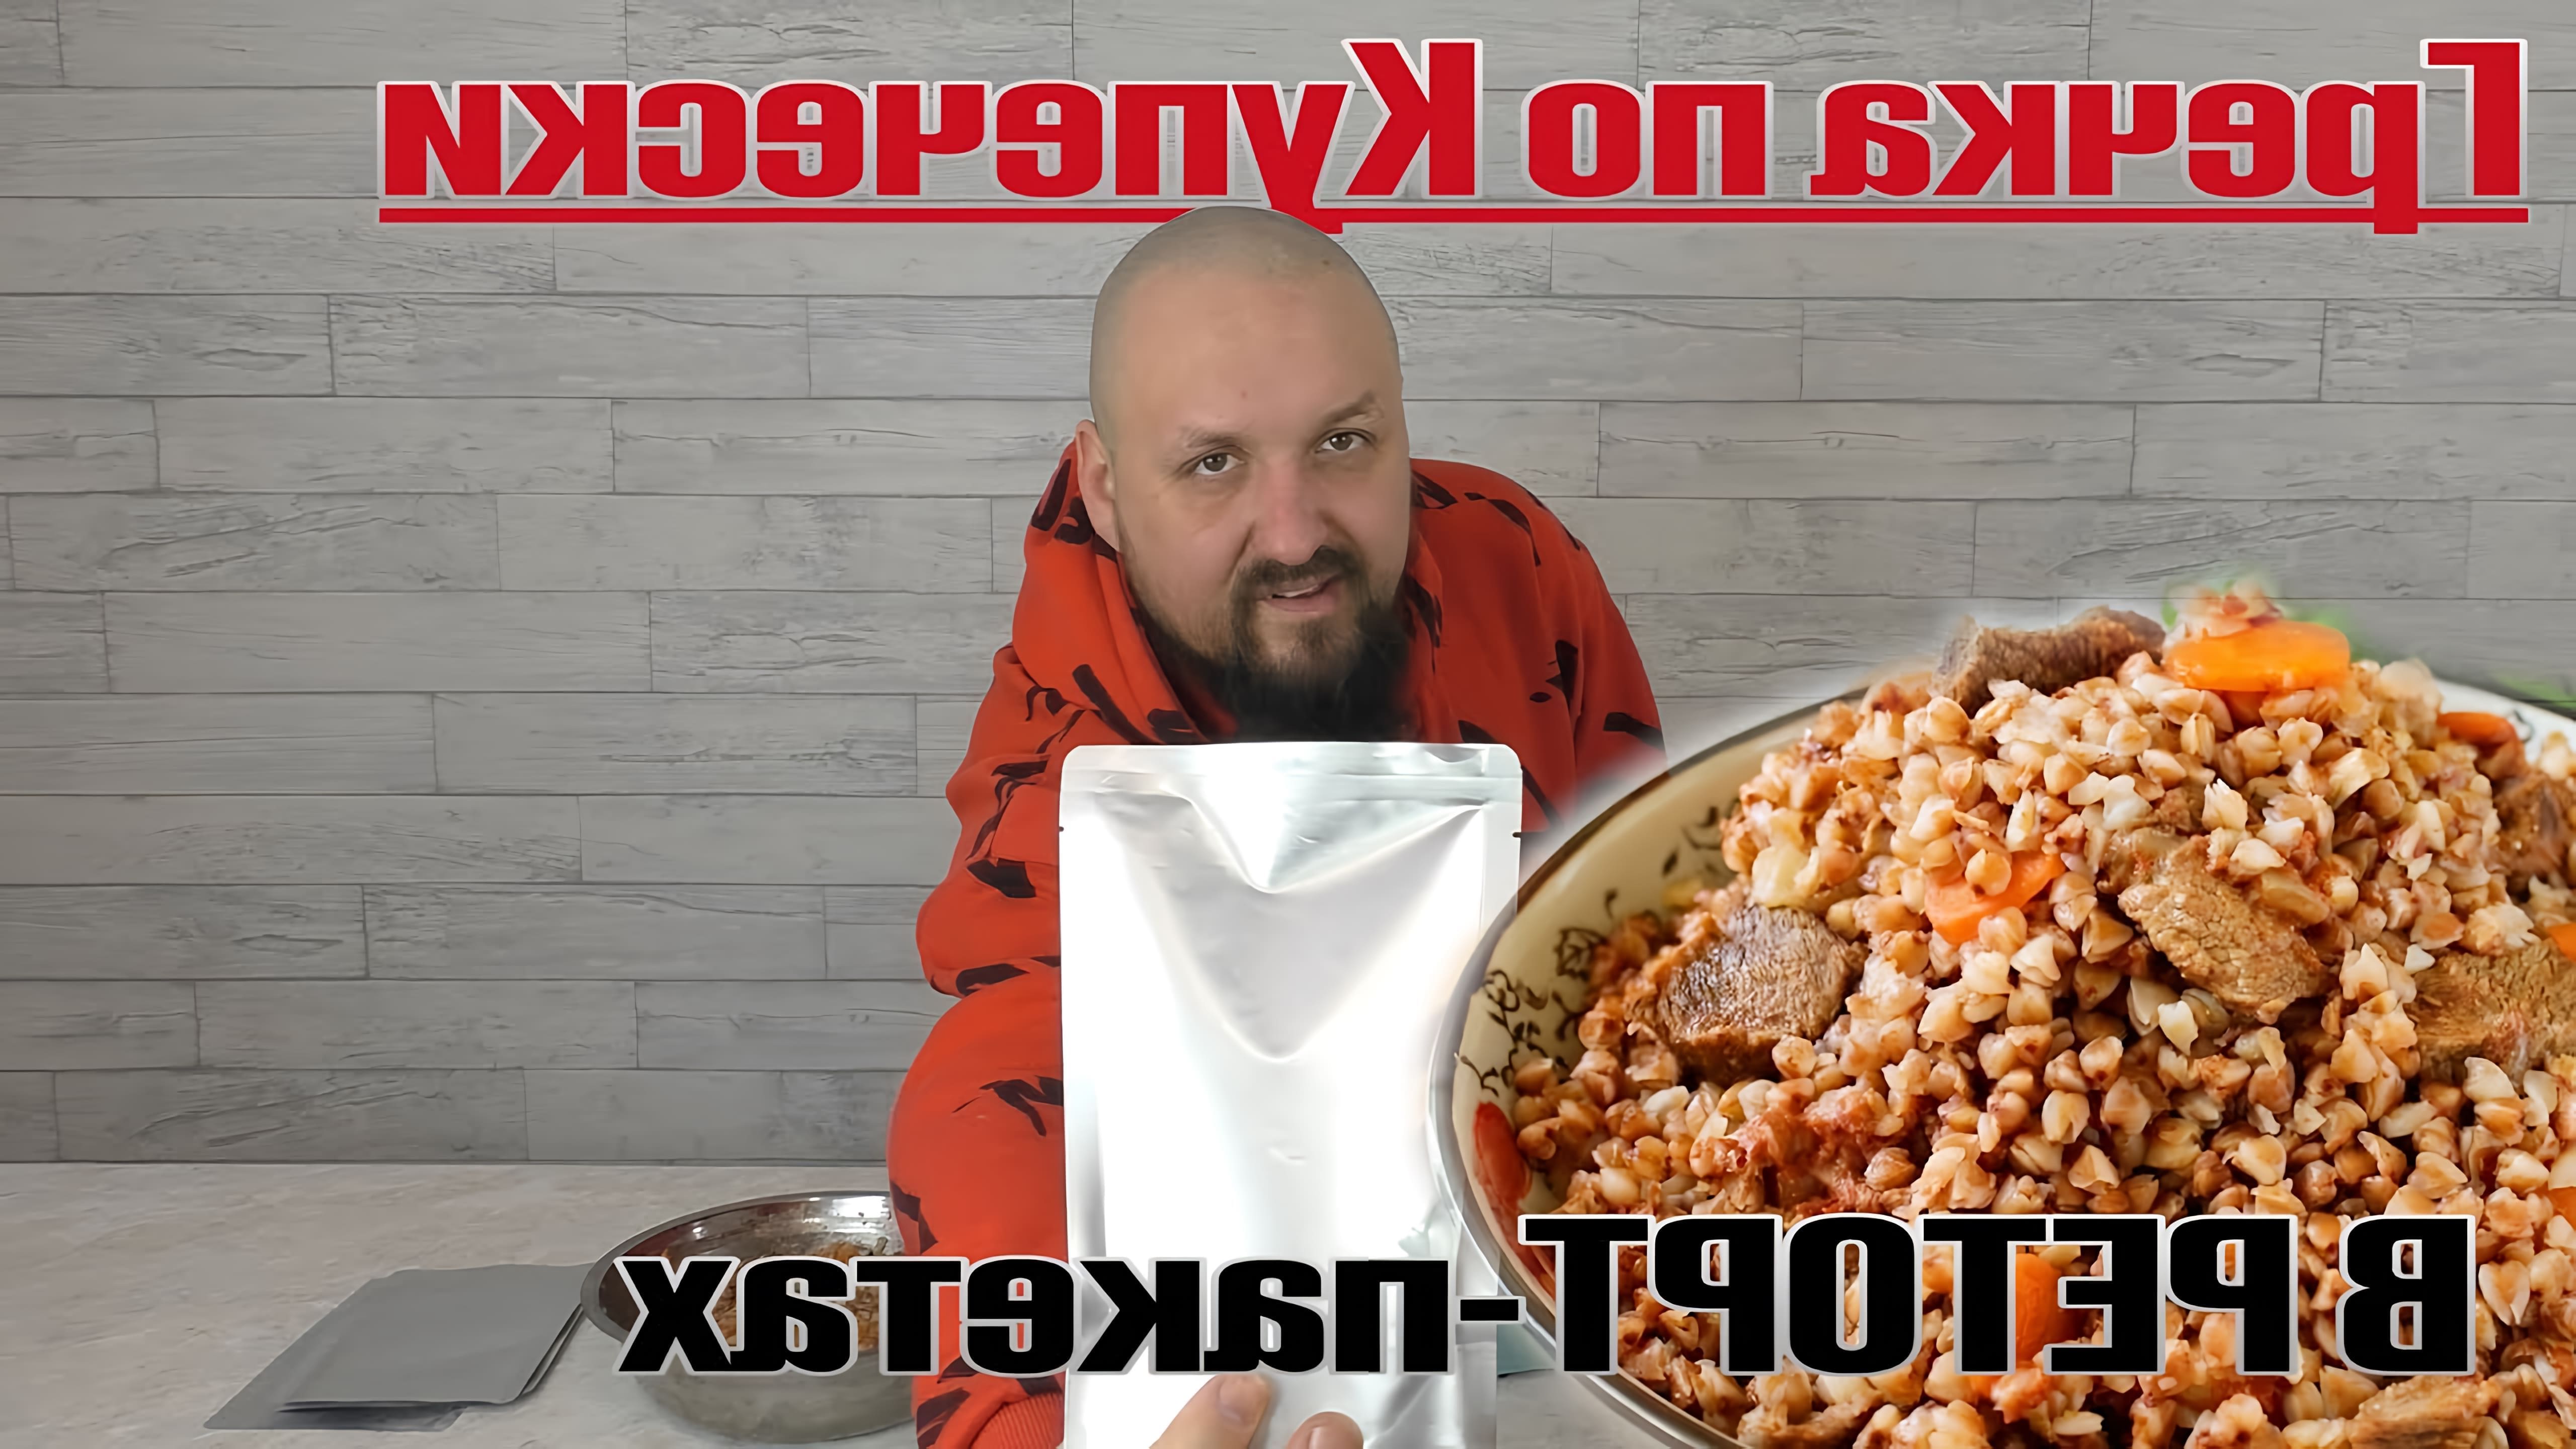 В этом видео Илья показывает, как приготовить гречневую кашу с фаршем и овощами в реторт-пакетах, которые можно использовать для длительного хранения продуктов